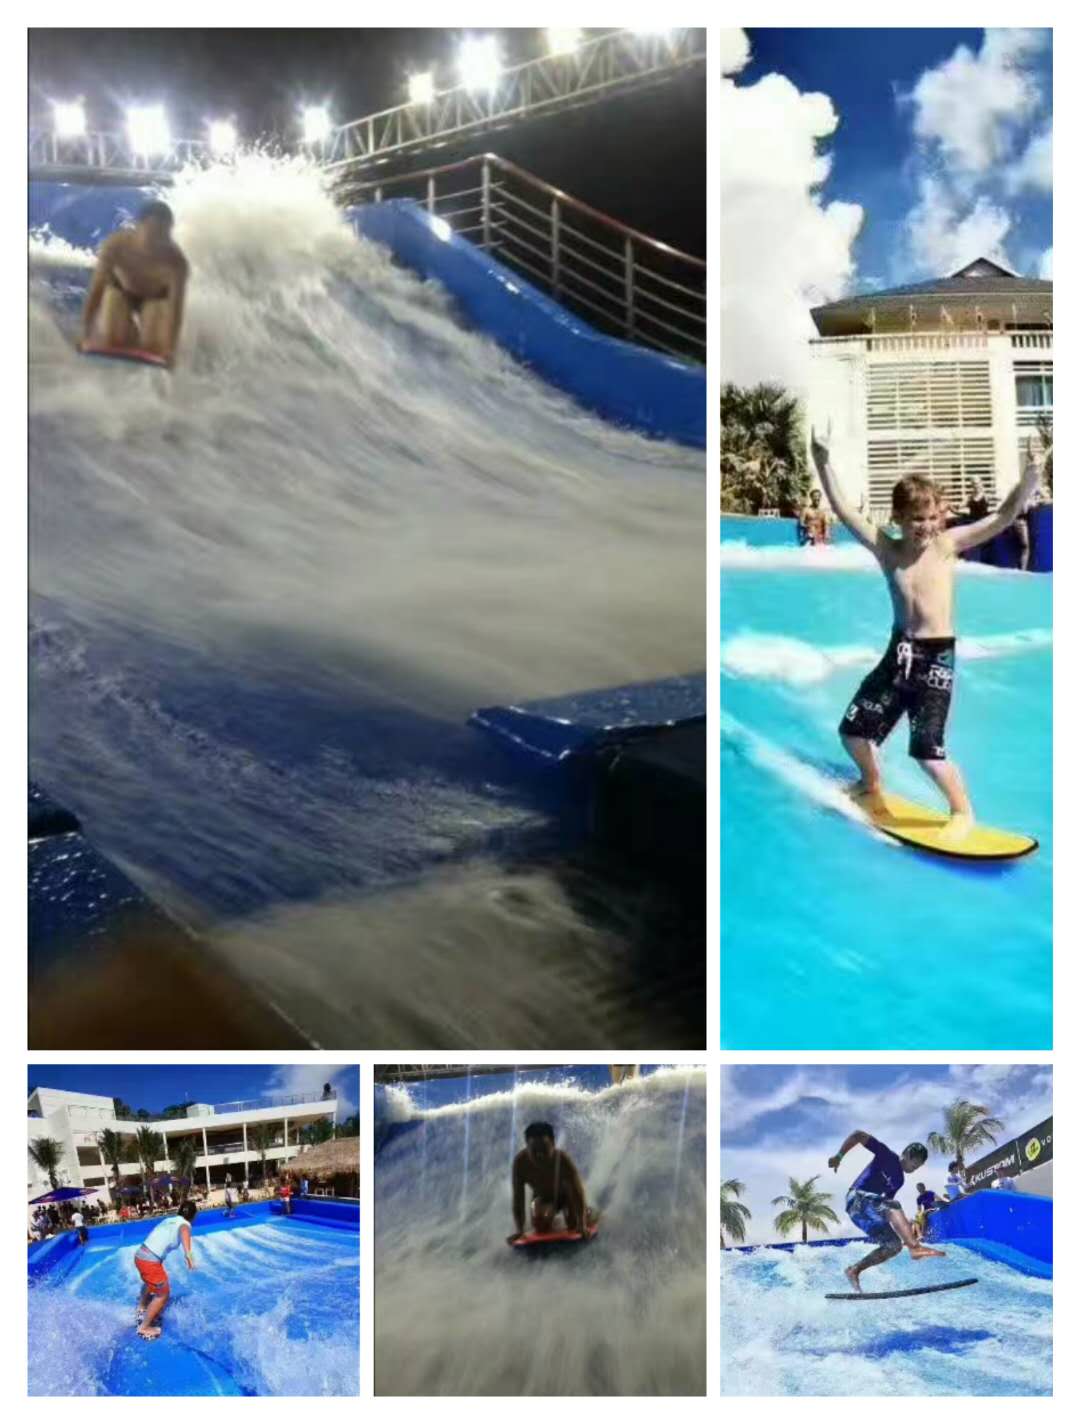 移动式水上冲浪 模拟冲浪 滑板冲浪等水上娱乐设备出租出售